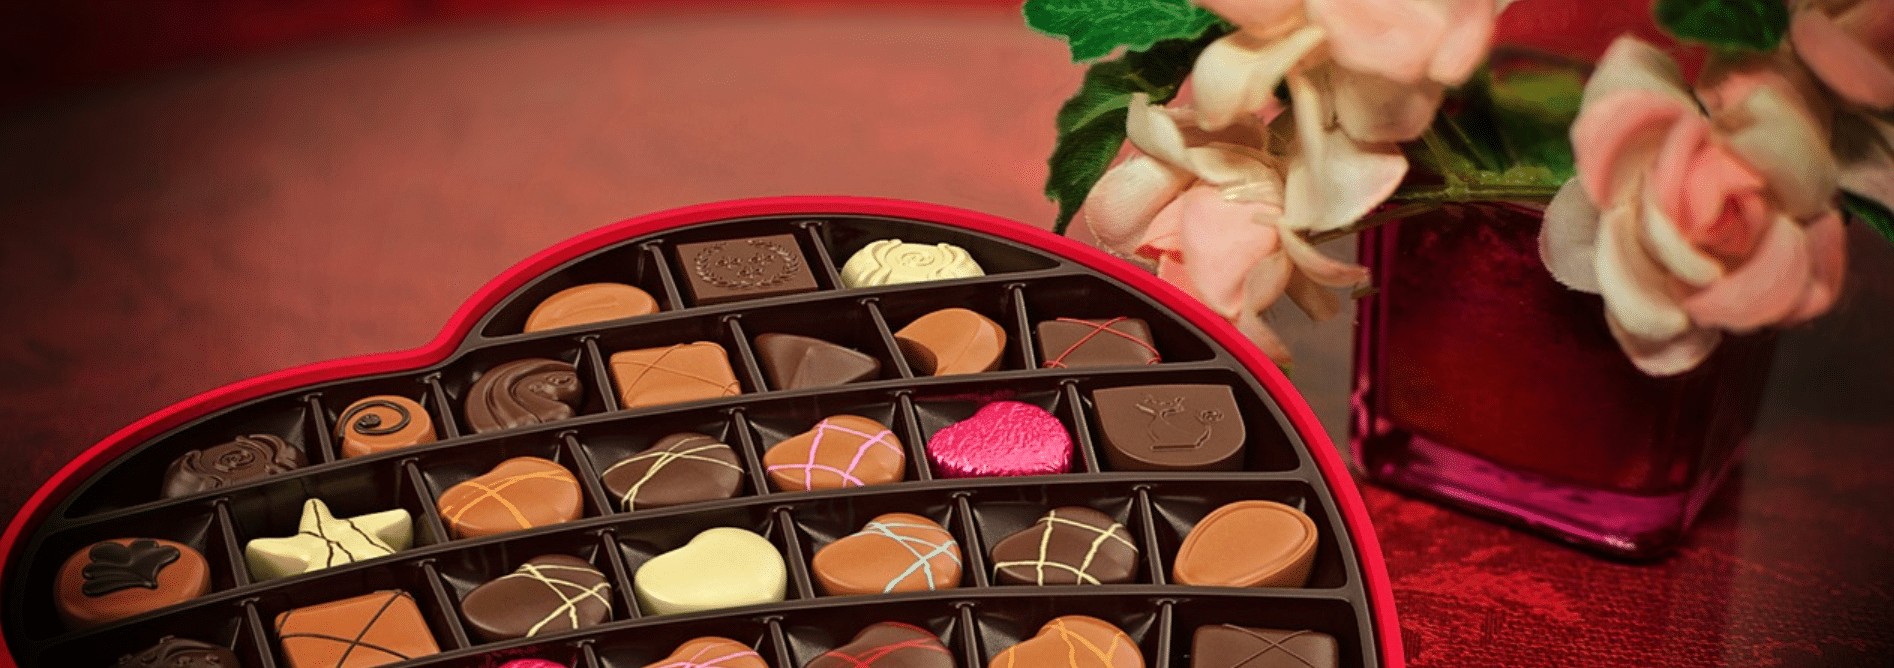 Des chocolats pour la Saint-Valentin